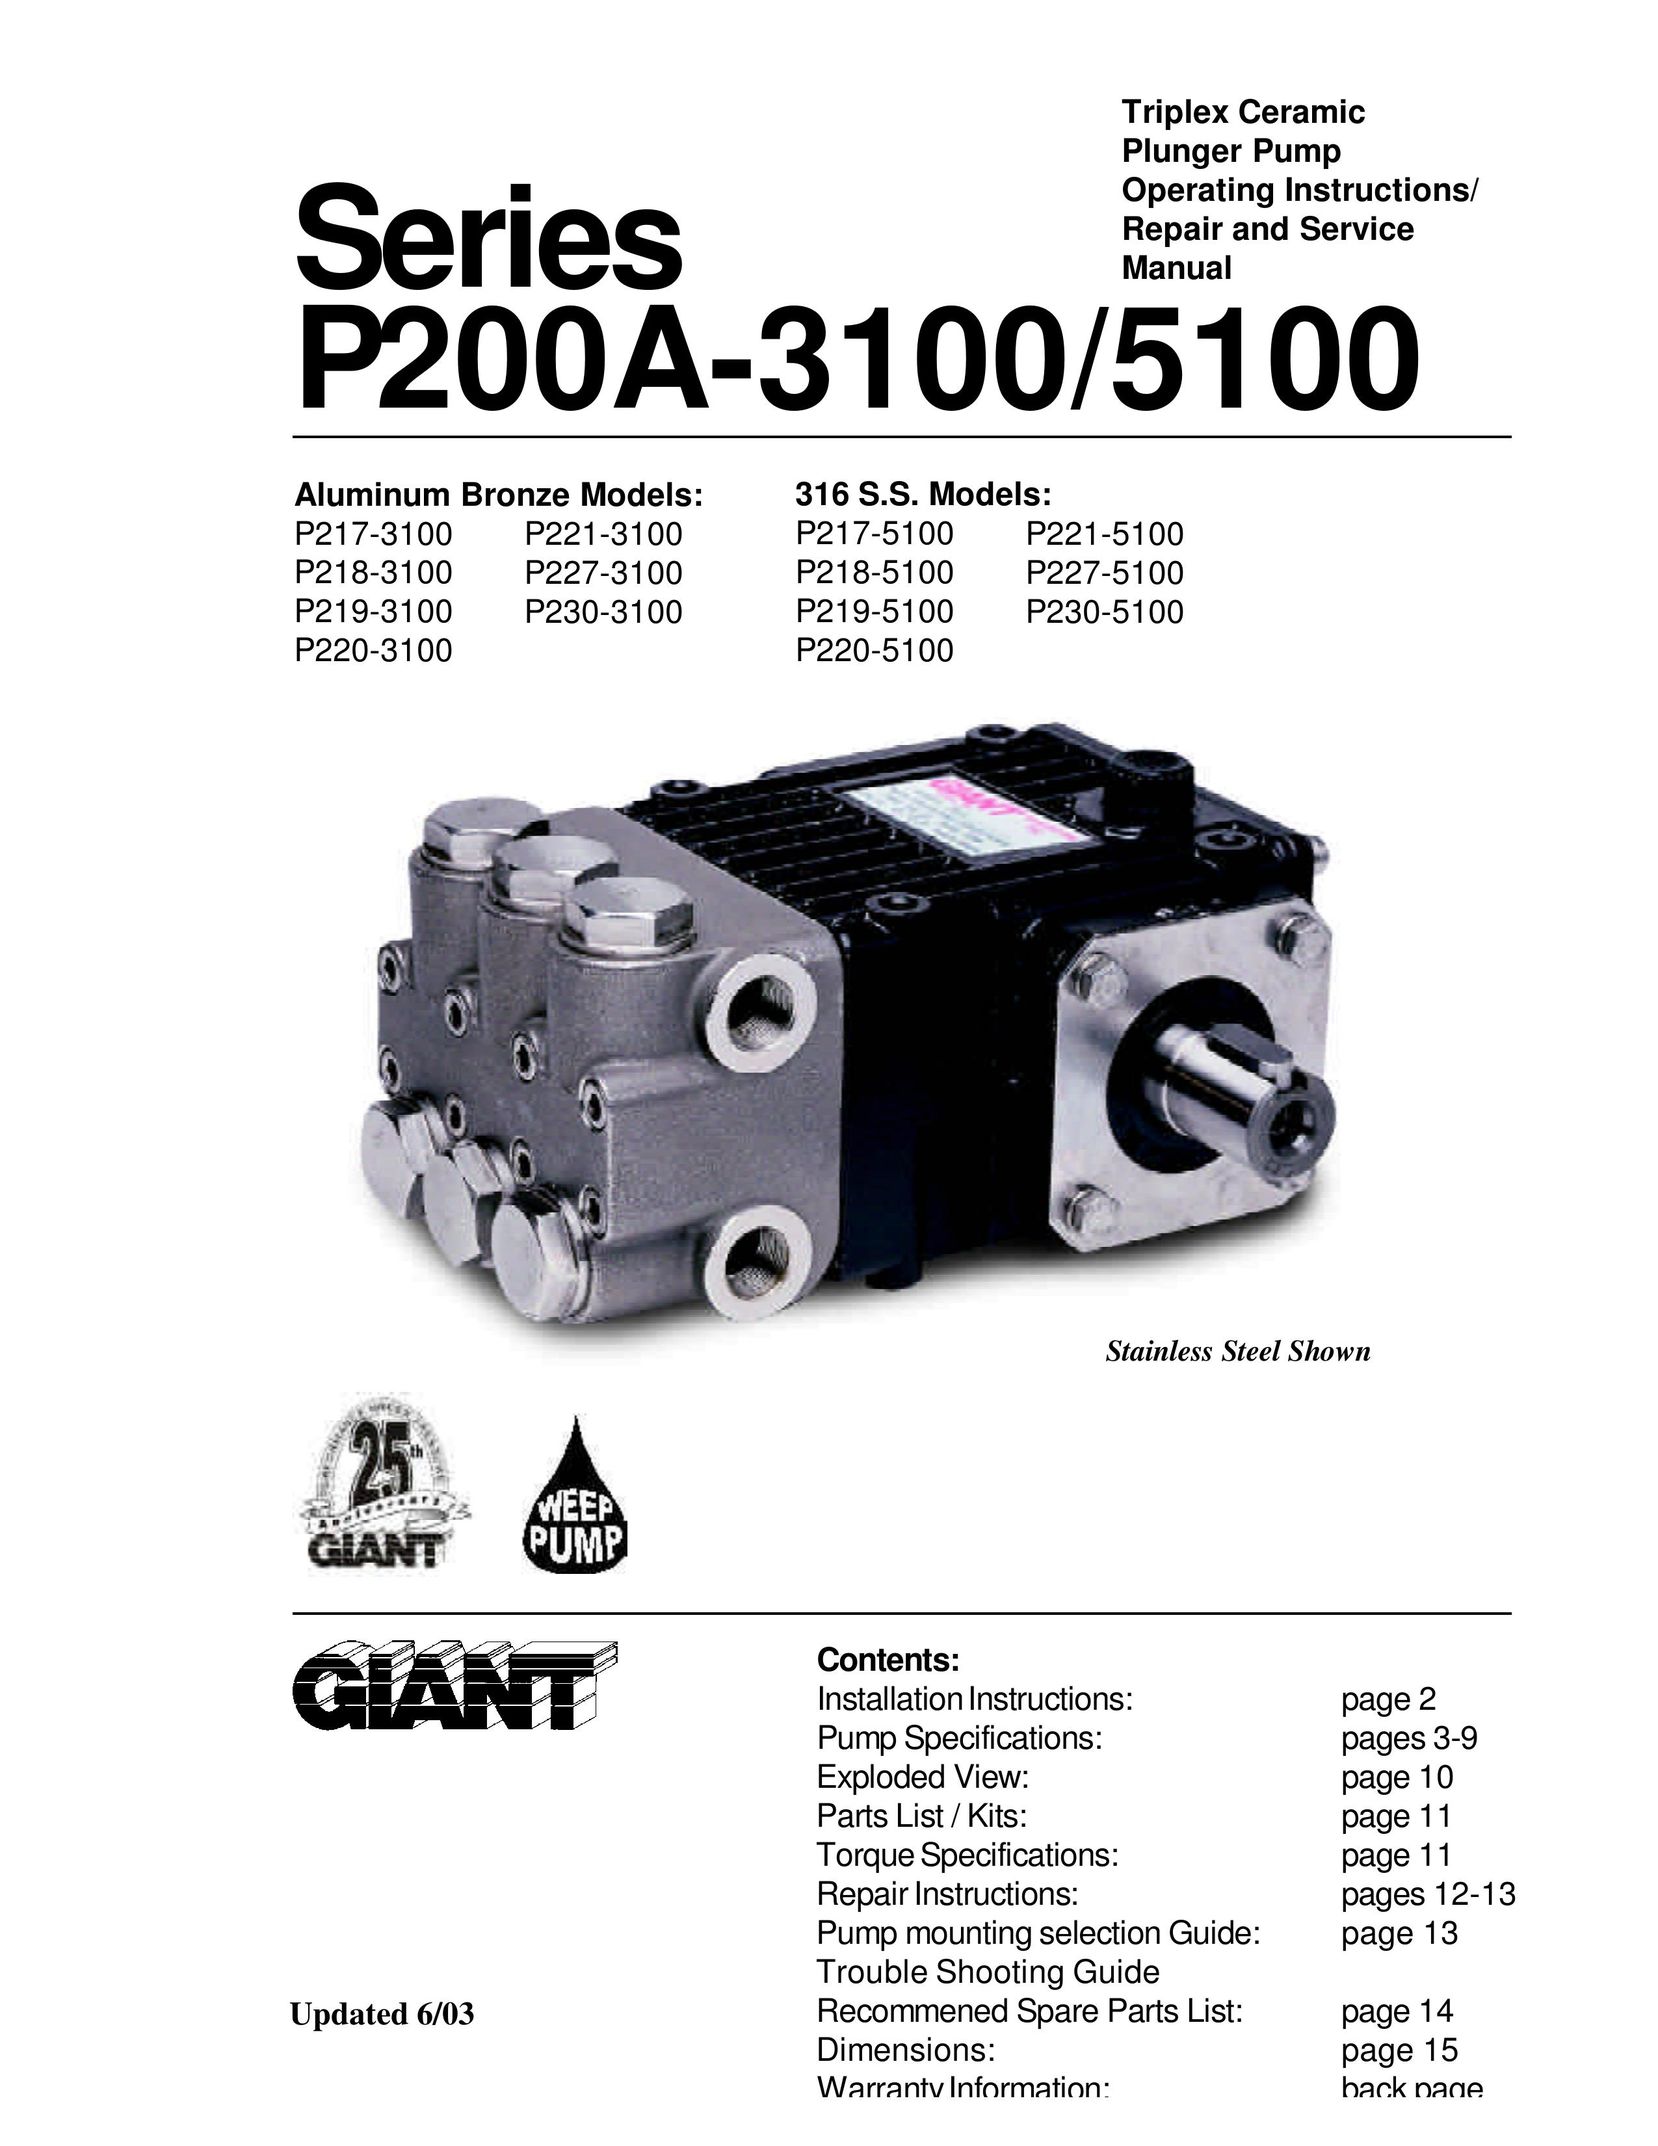 Giant P219-3100 Water Pump User Manual